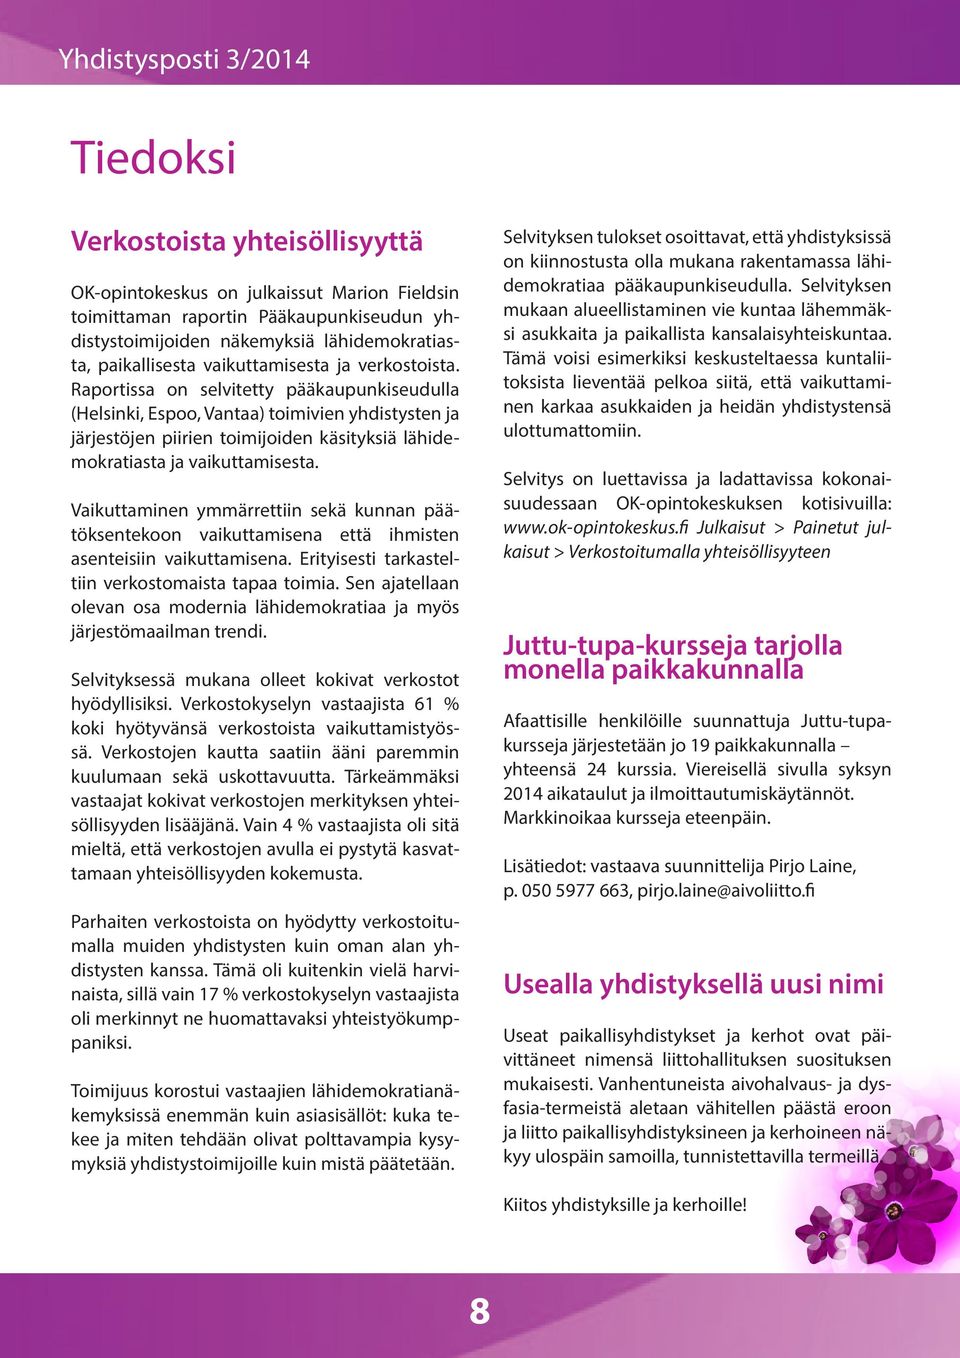 Raportissa on selvitetty pääkaupunkiseudulla (Helsinki, Espoo, Vantaa) toimivien yhdistysten ja järjestöjen piirien toimijoiden käsityksiä lähidemokratiasta ja vaikuttamisesta.